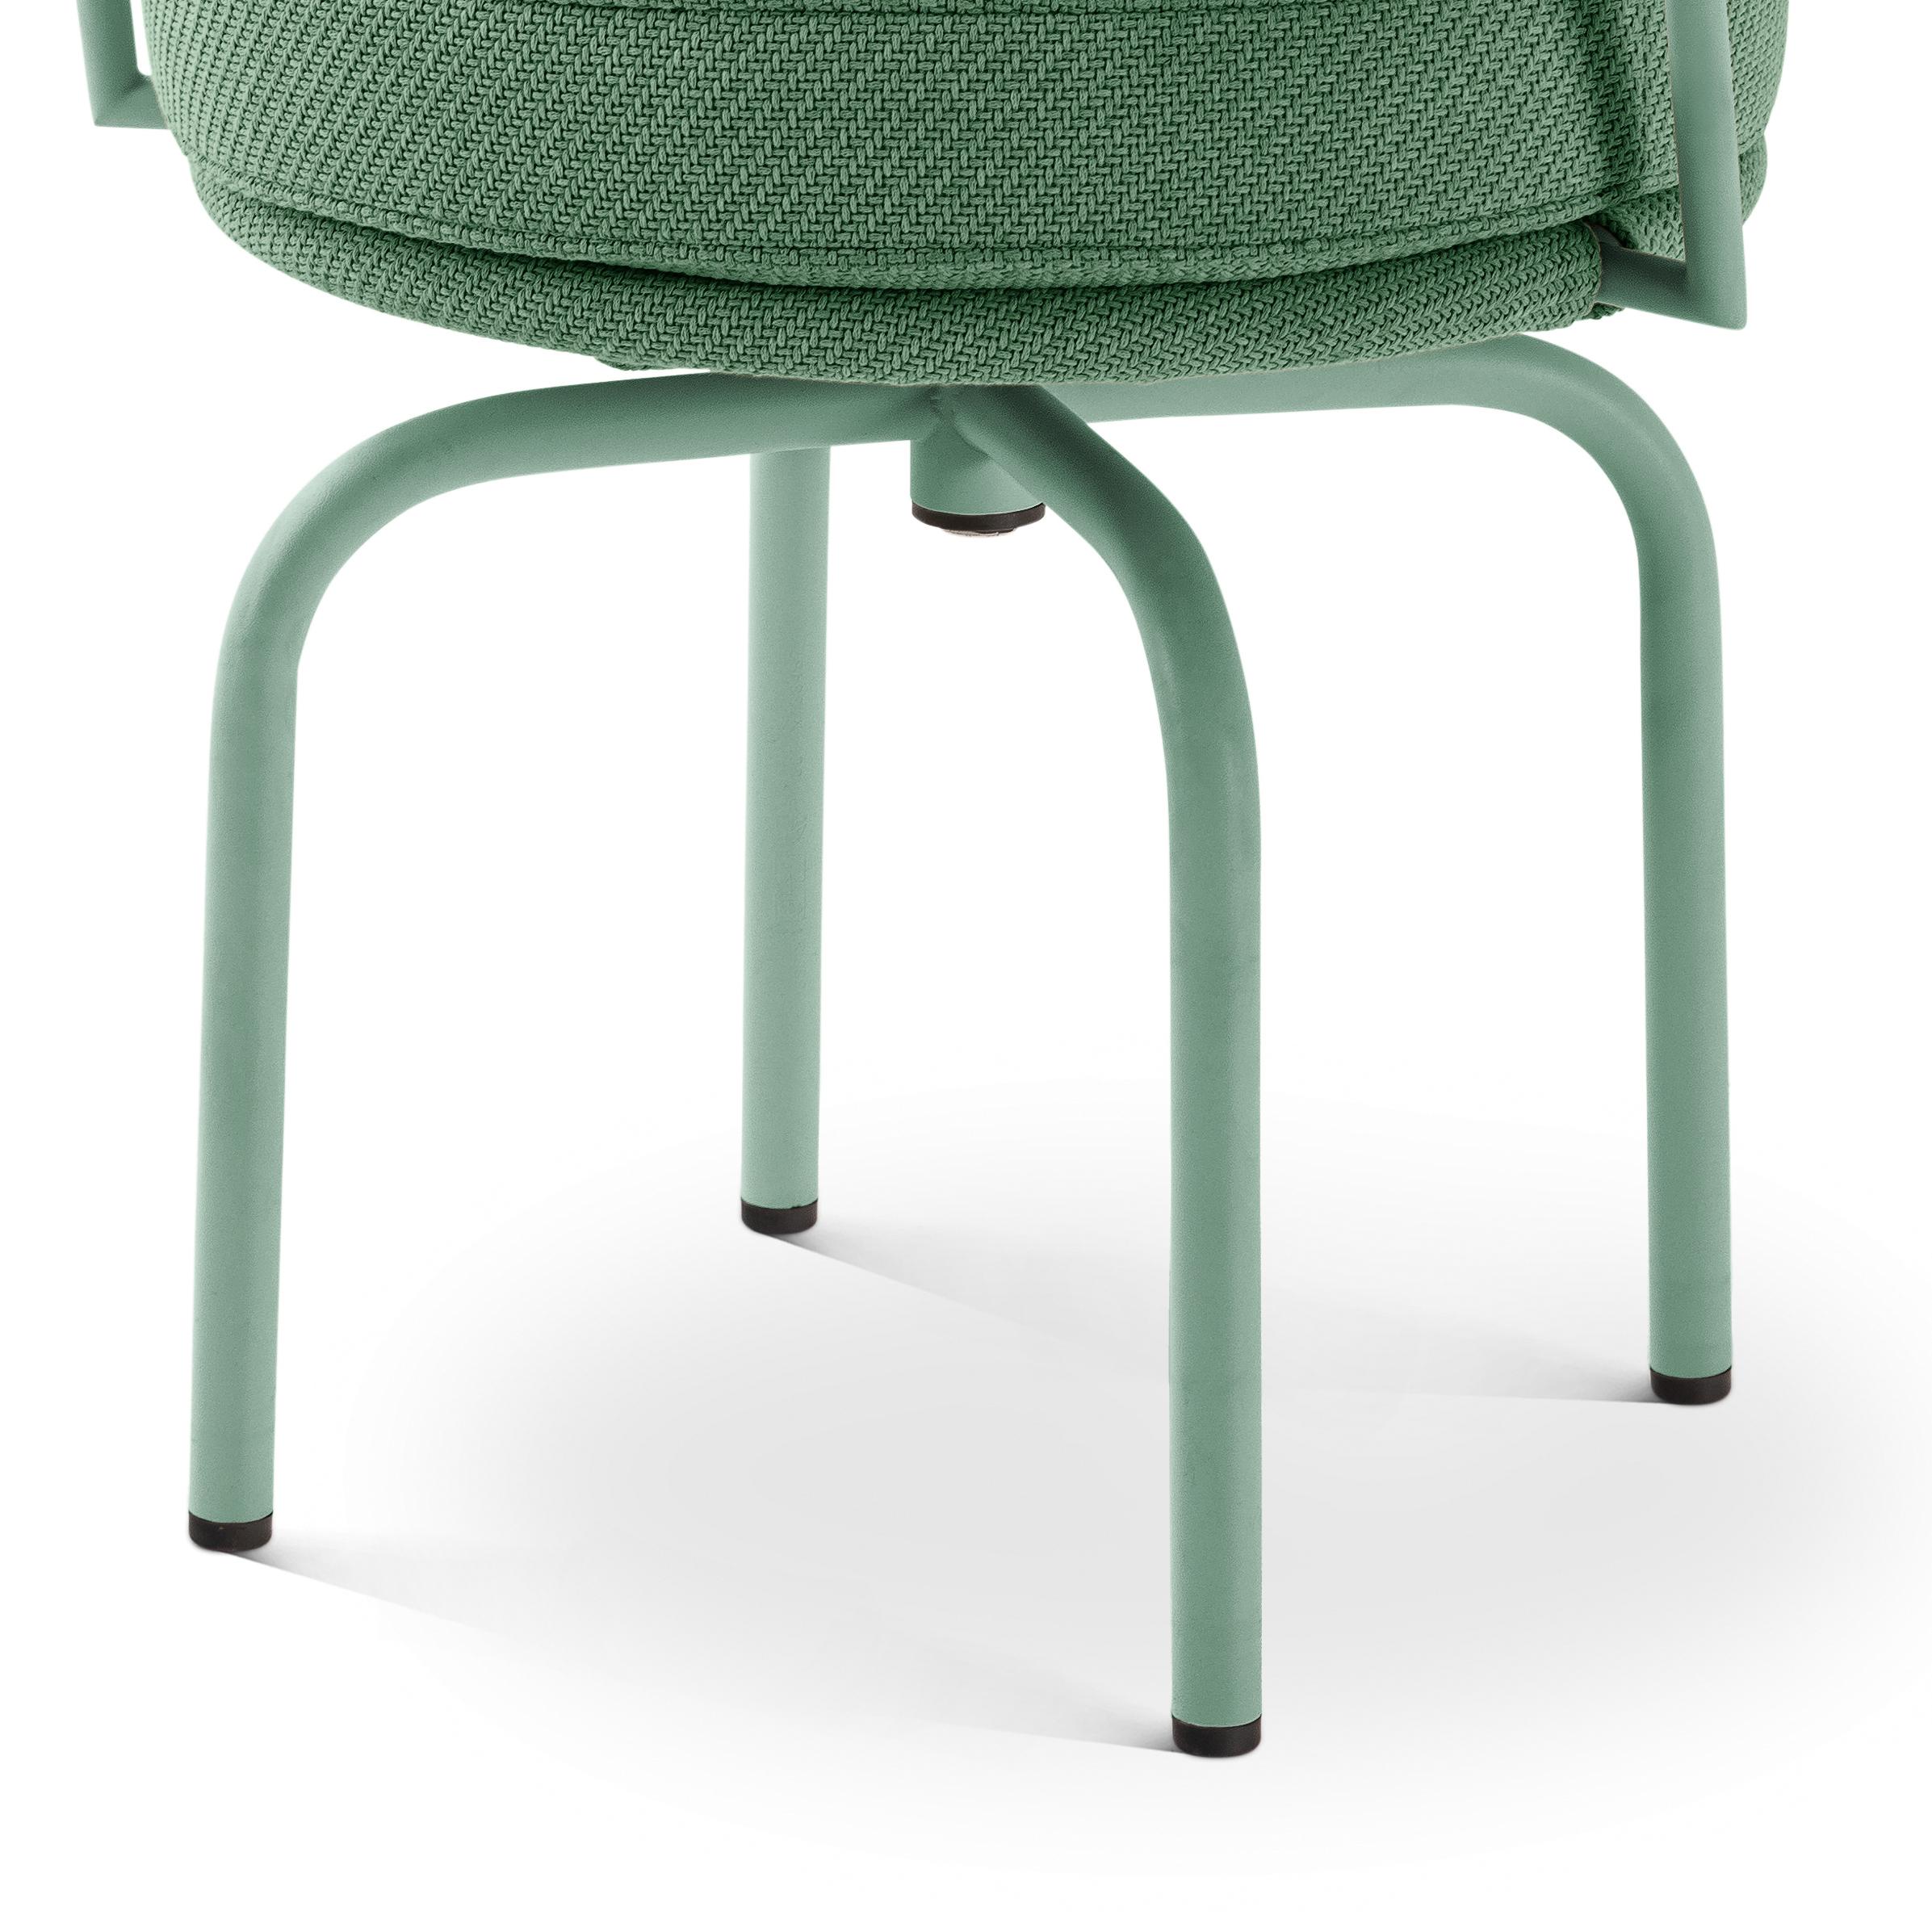 Chaise LC7 verte d'extérieur conçue par Charlotte Perriand en 1927. Relancé en 1978.
Fabriqué par Cassina en Italie.

Conçu par Charlotte Perriand et faisant partie de la collection LC de Le Corbusier, Pierre Jeanneret et Charlotte Perriand.

Icône